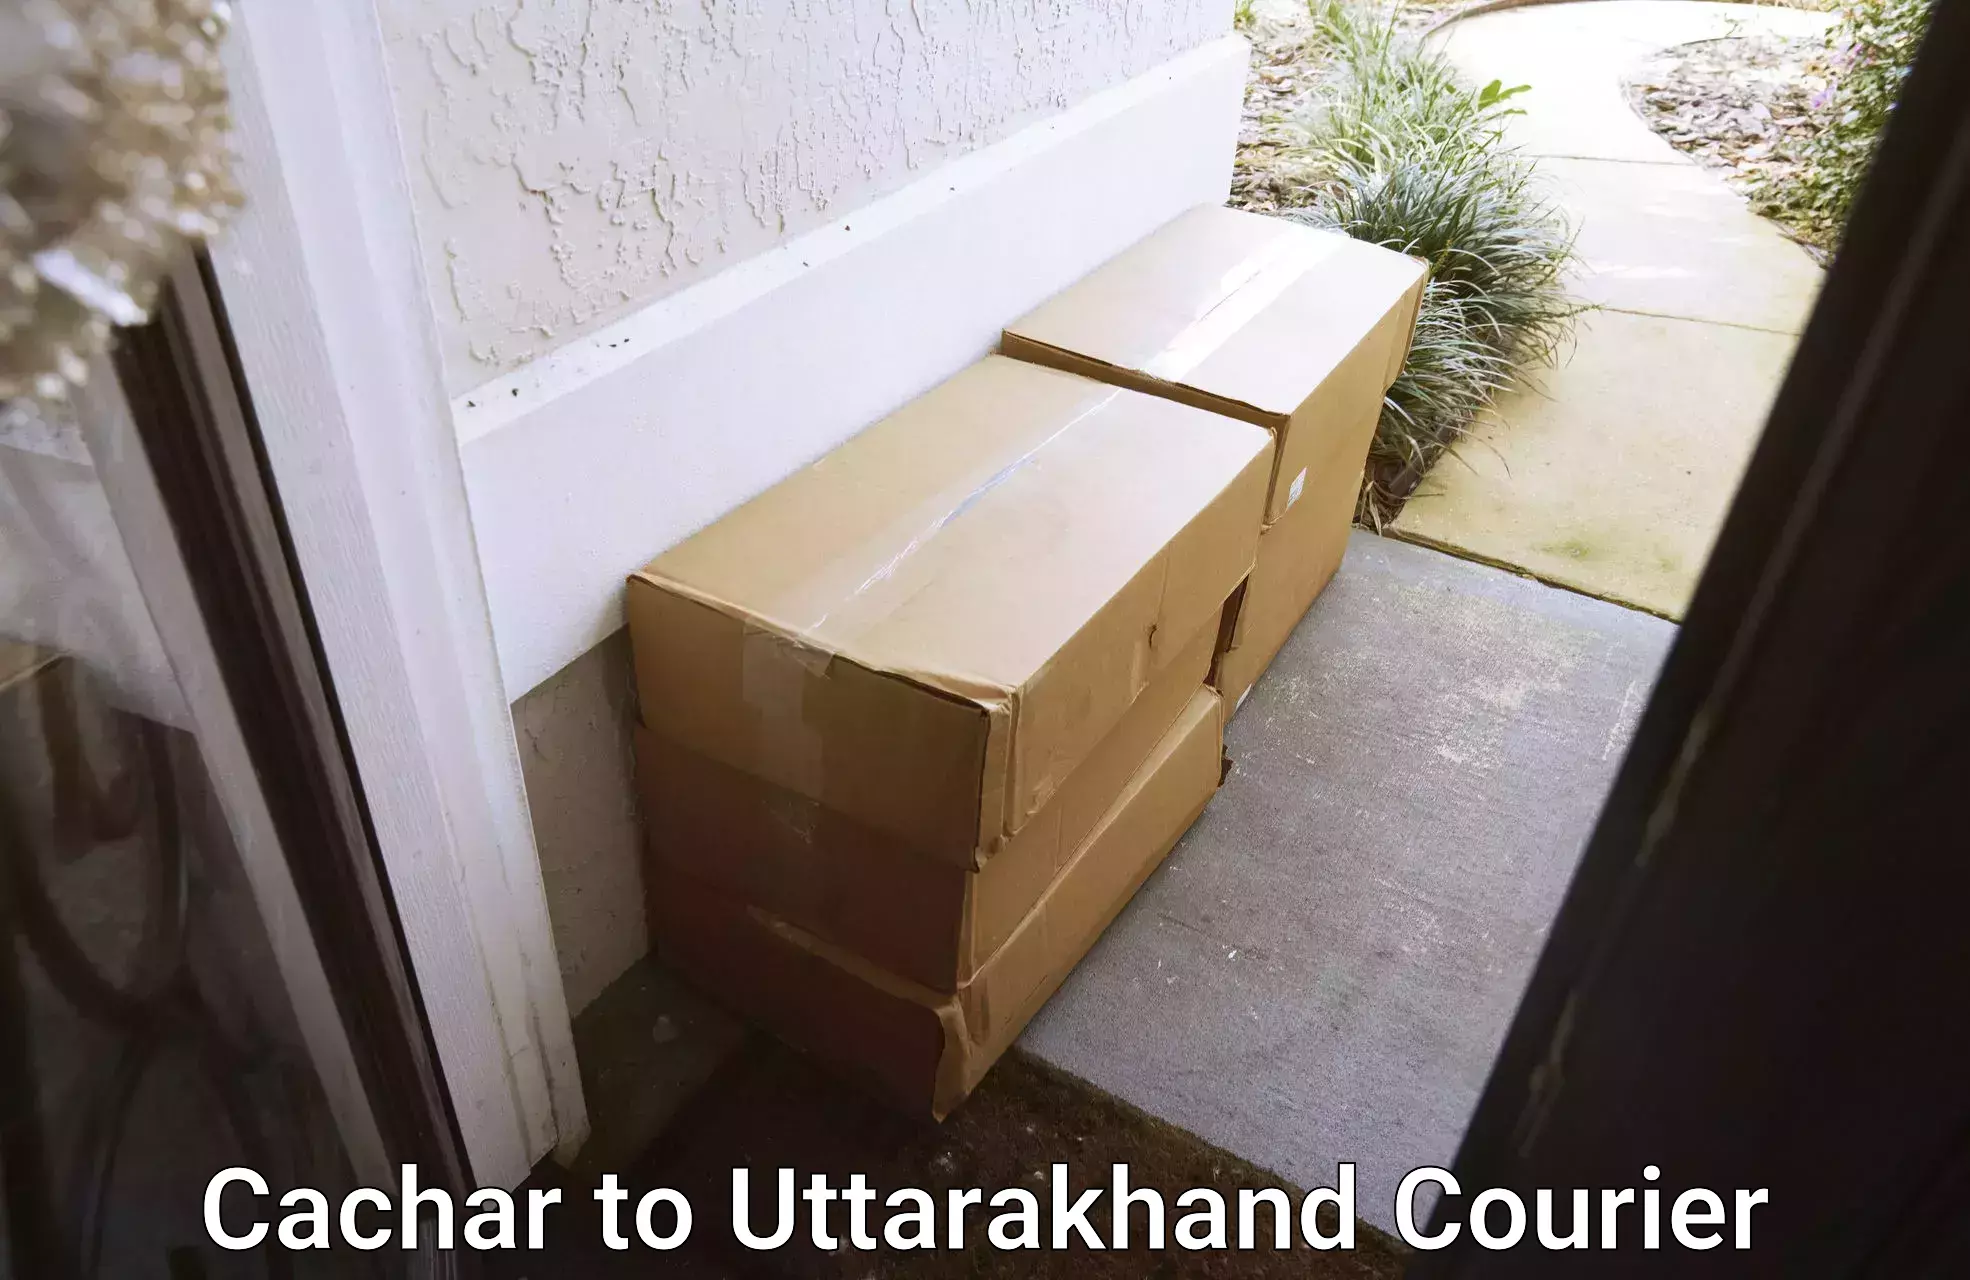 Door-to-door freight service Cachar to Dwarahat